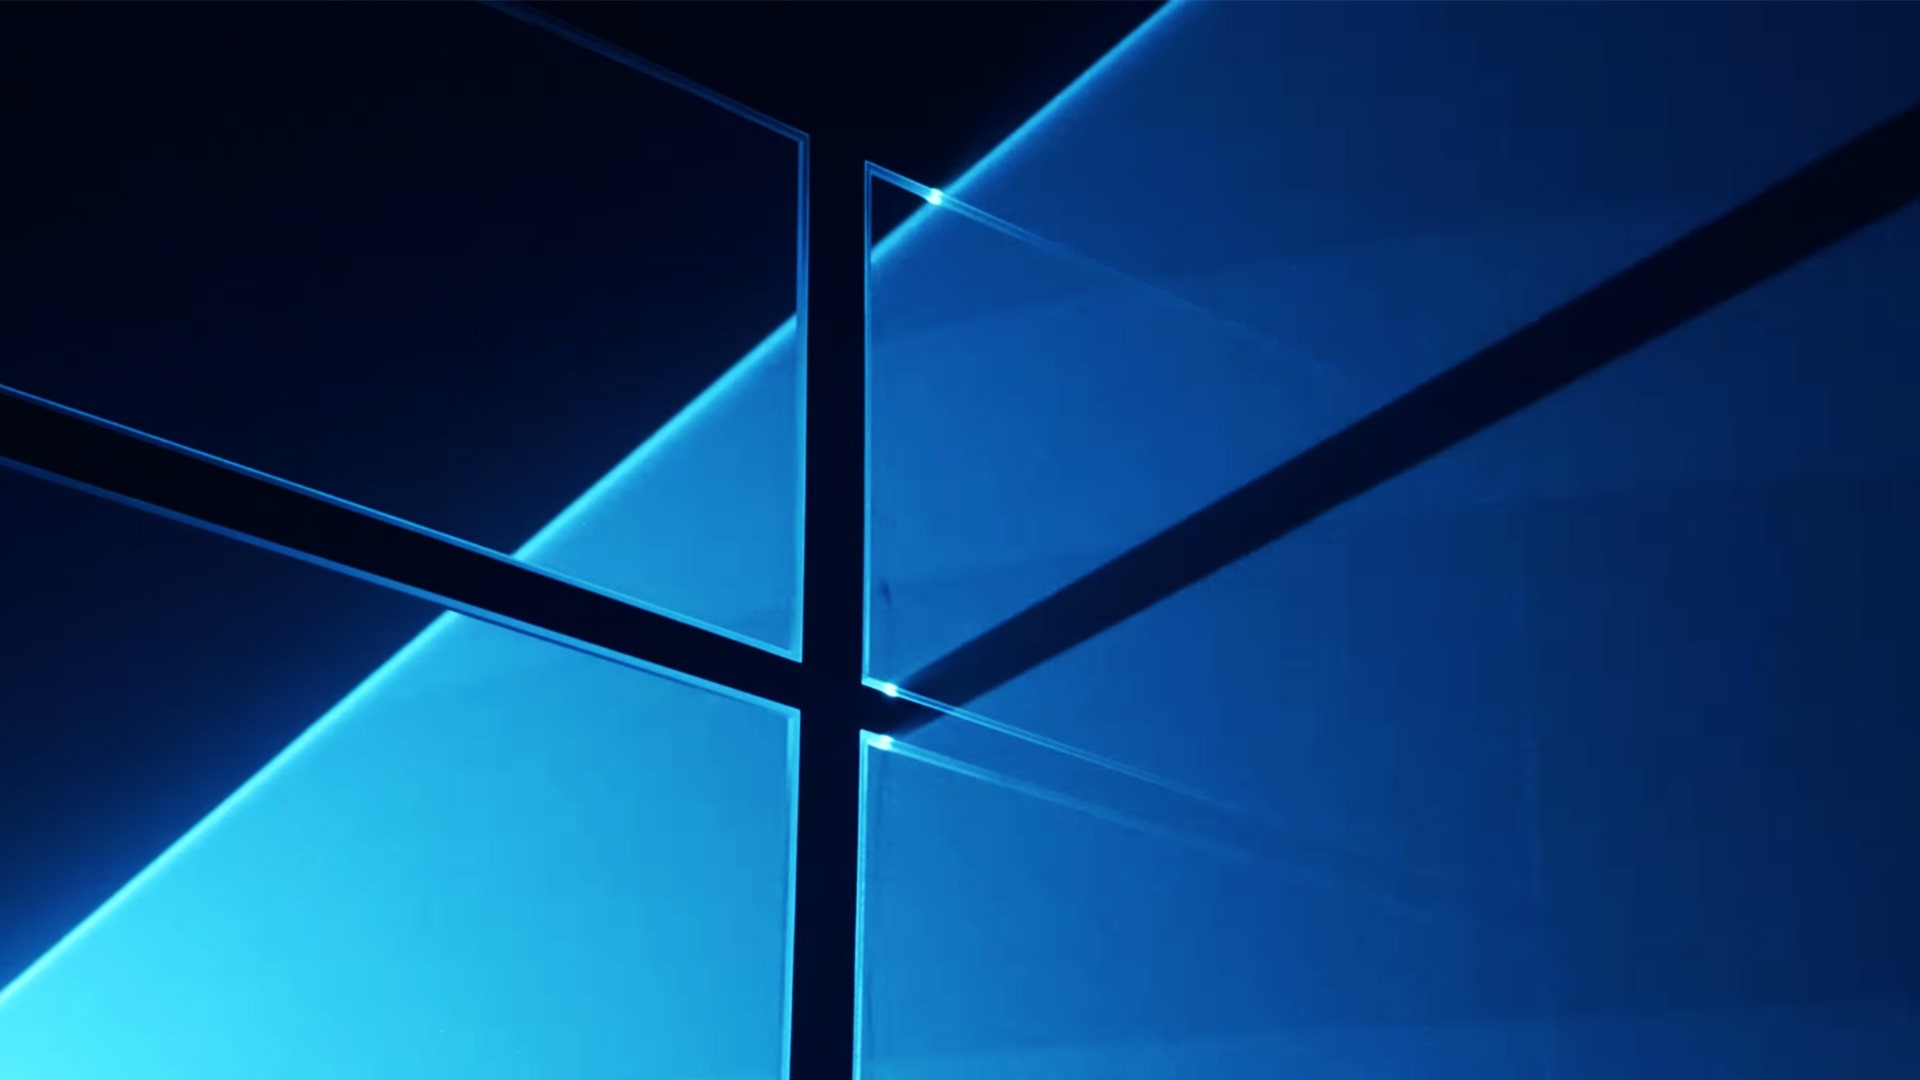 Windows 10 高清桌面壁紙合集 二 15 19x1080 壁紙下載 Windows 10 高清桌面壁紙合集 二 系統壁紙 V3壁紙站